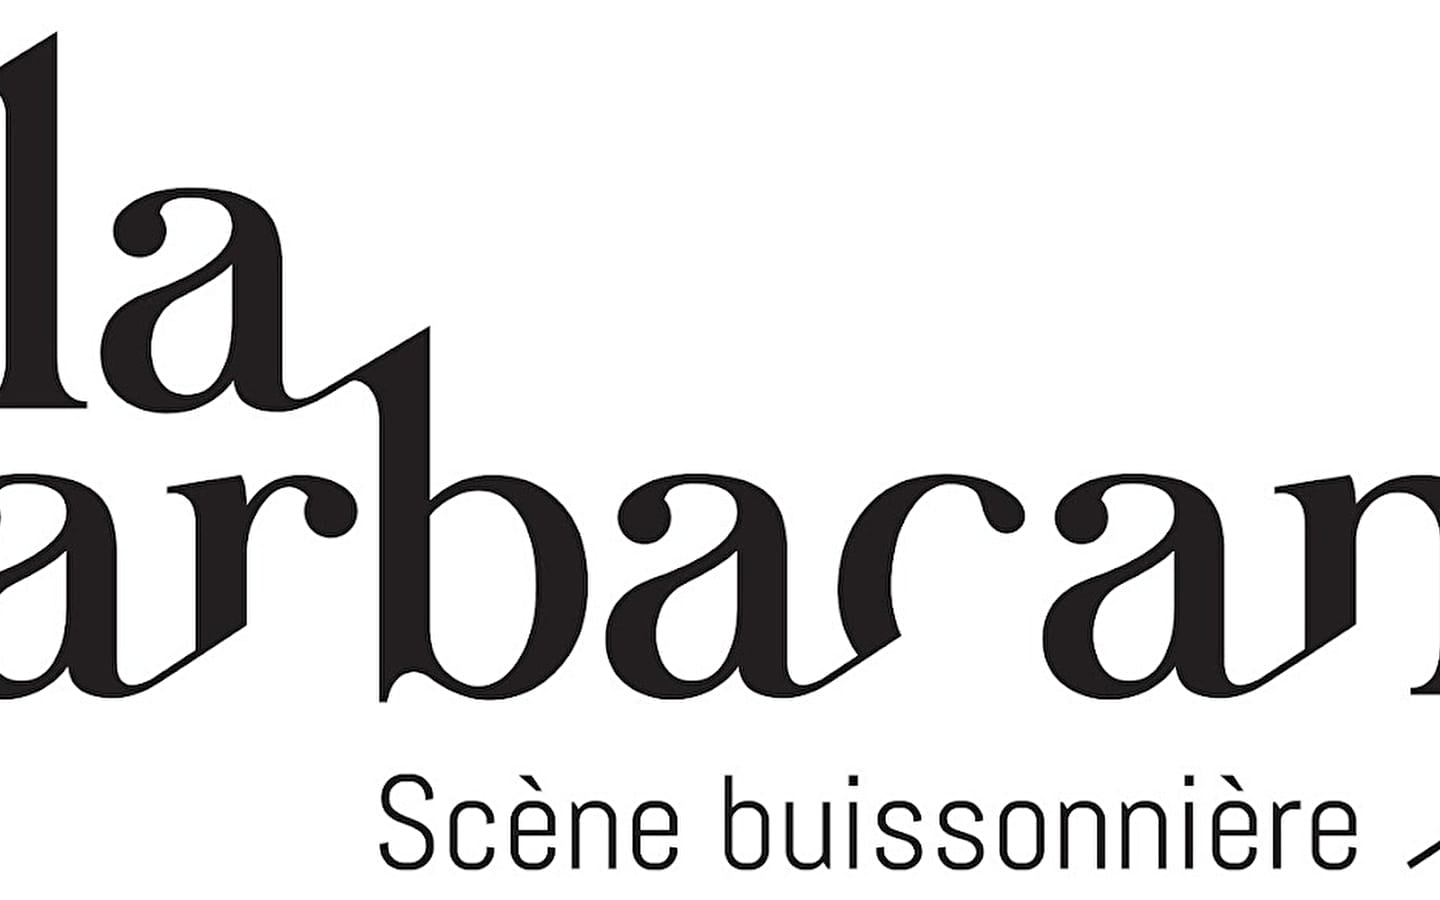 La Sarbacane - Scène buissonnière